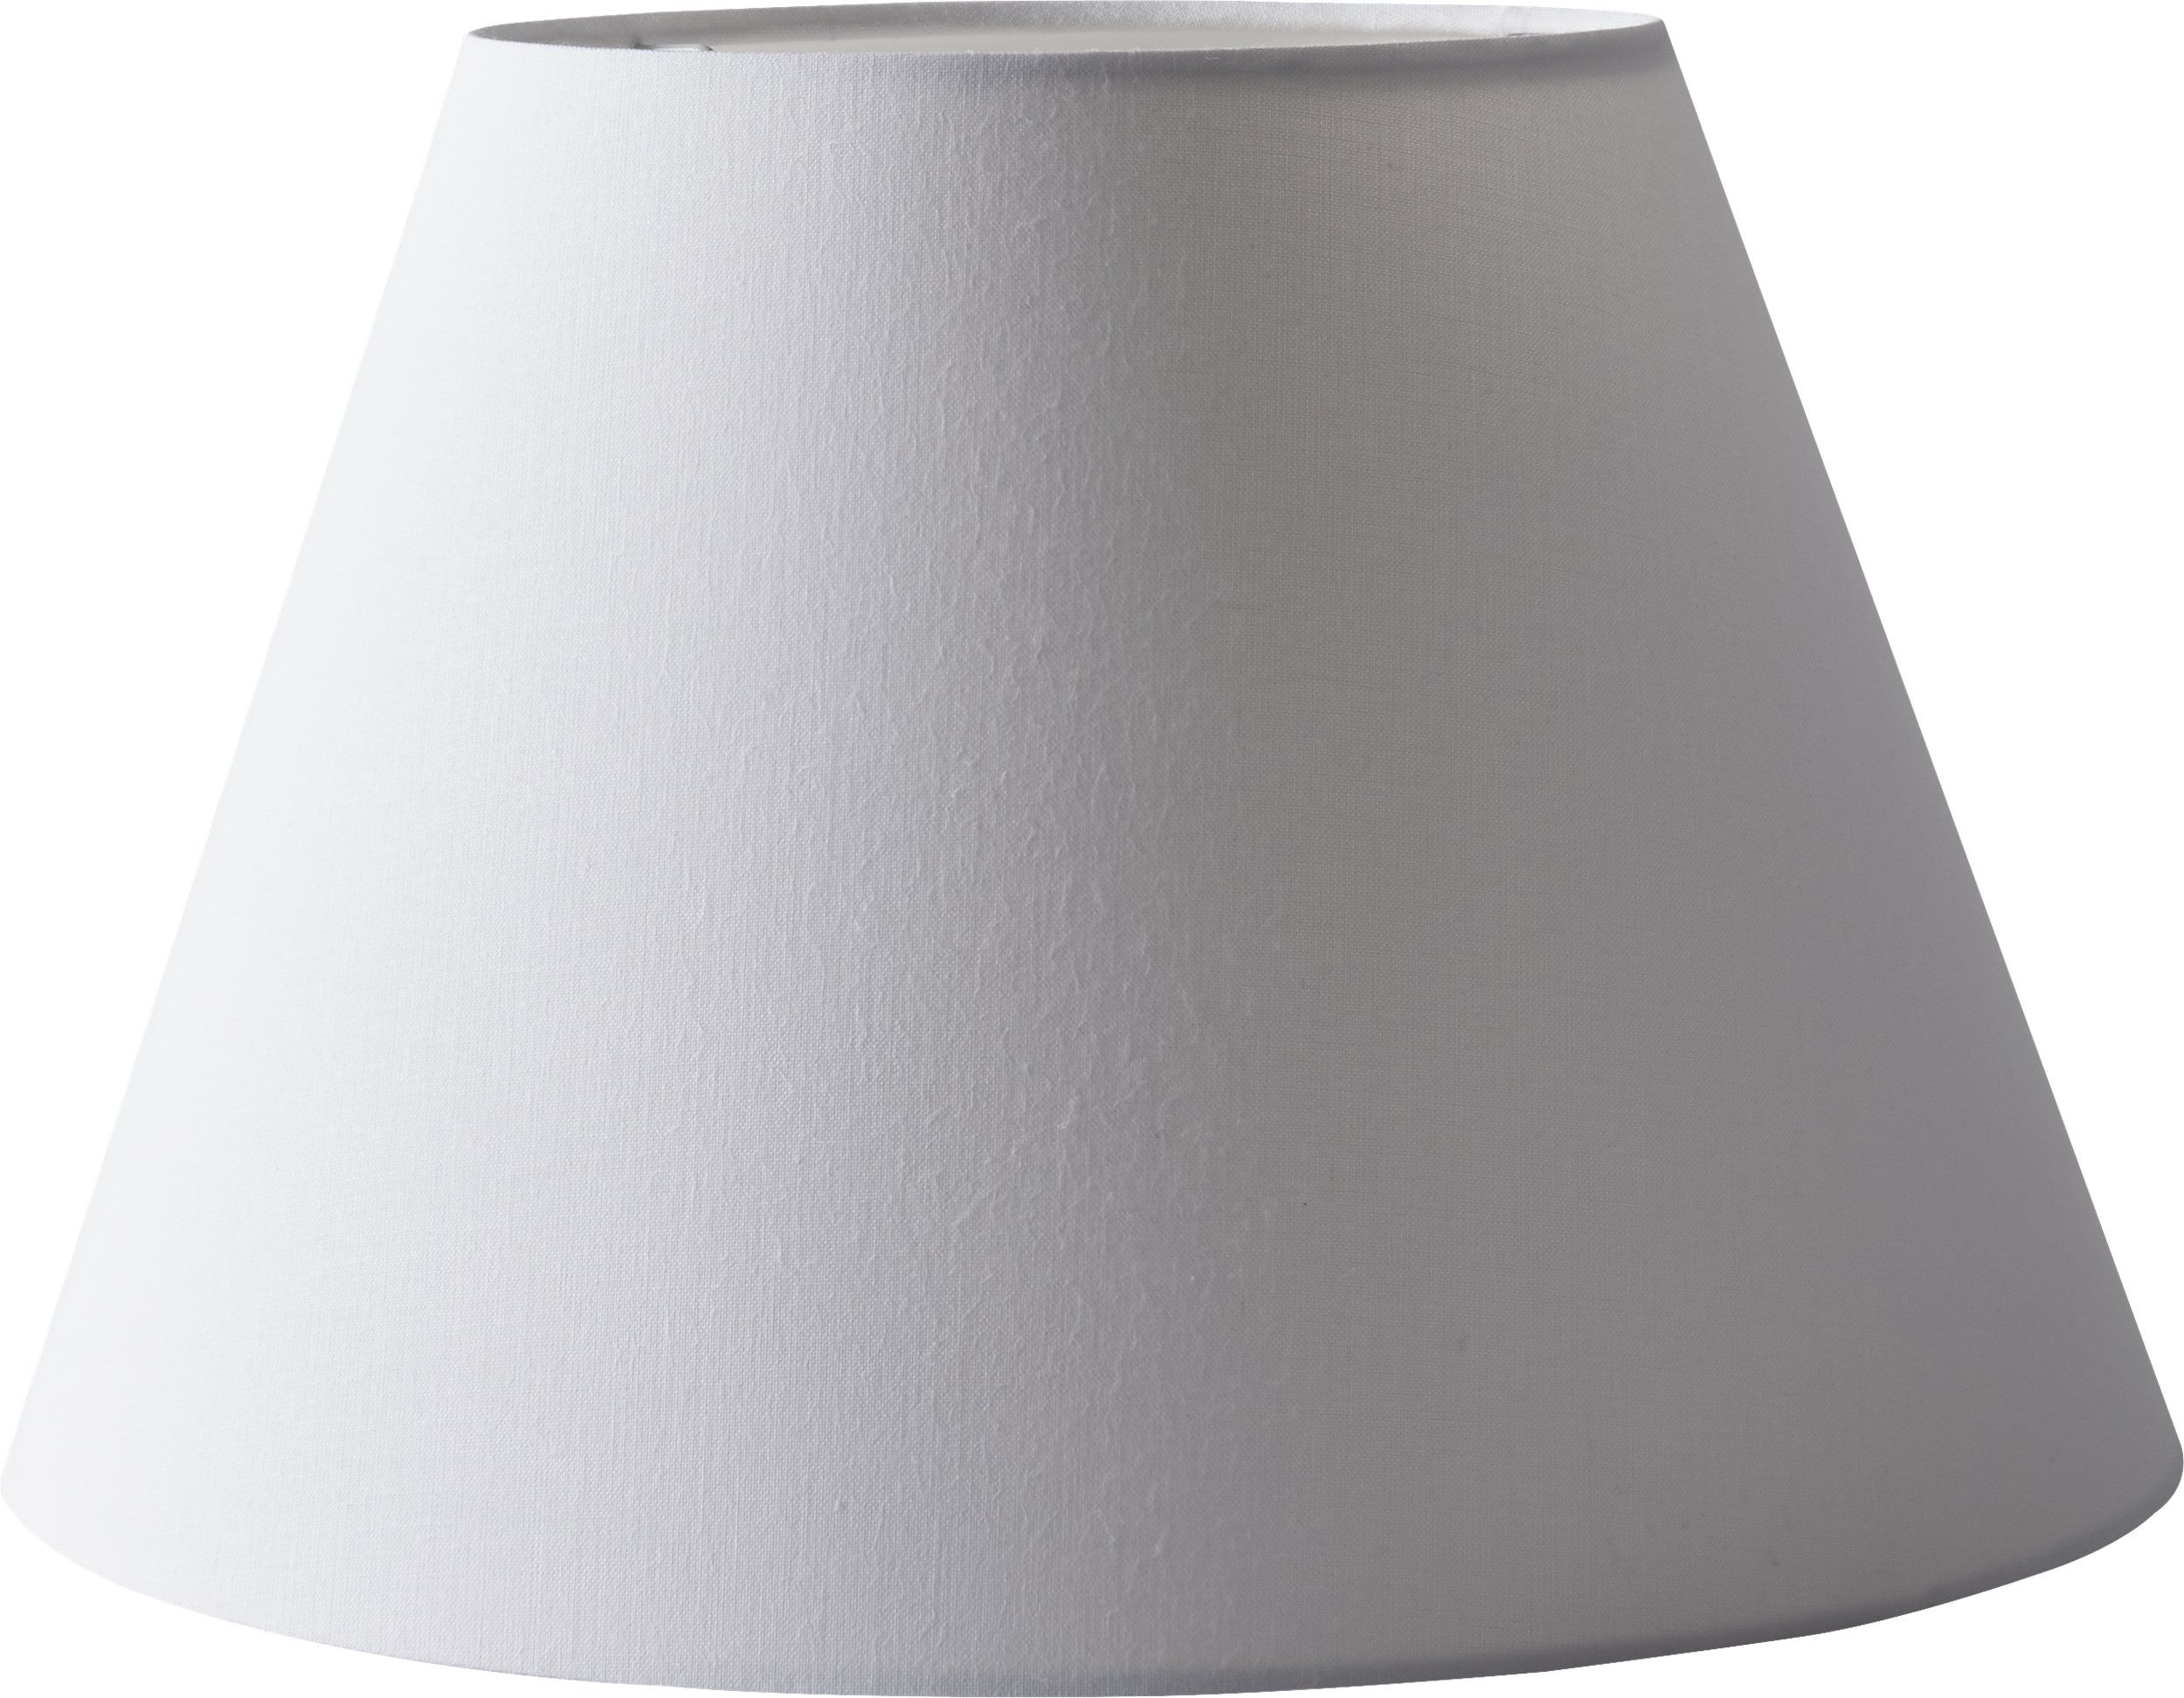 Inca Lampeskærm 23 x 30 cm - Hvid stofskærm og inderskærm i hvid folie